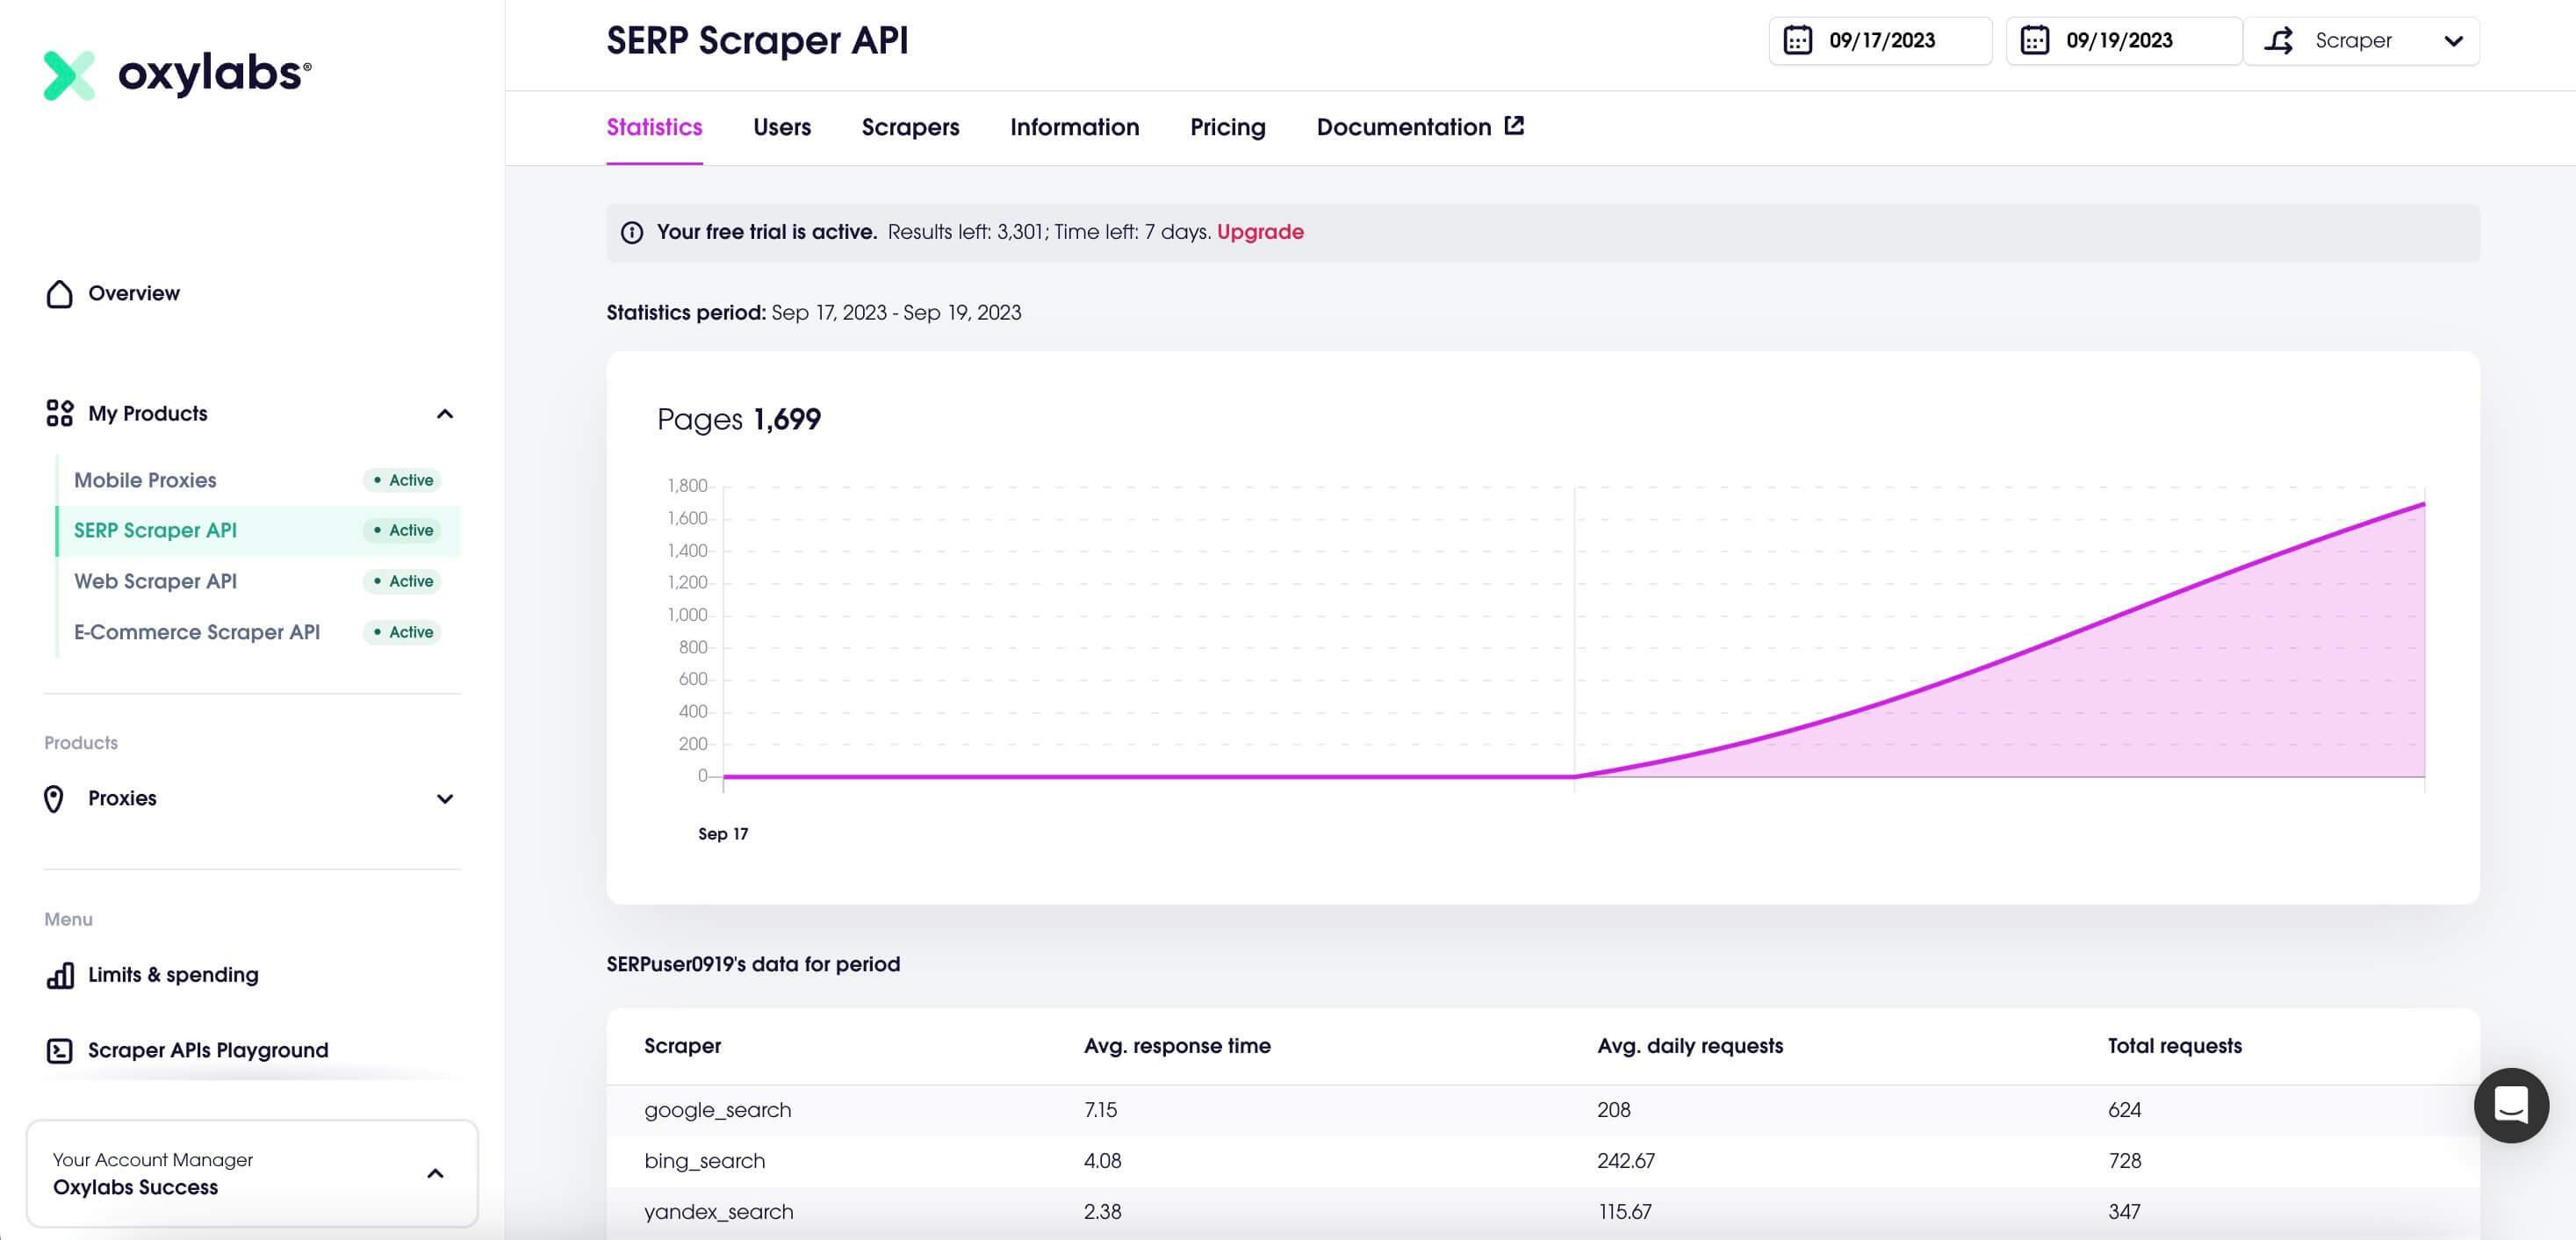 SERP Scraper API dashboard